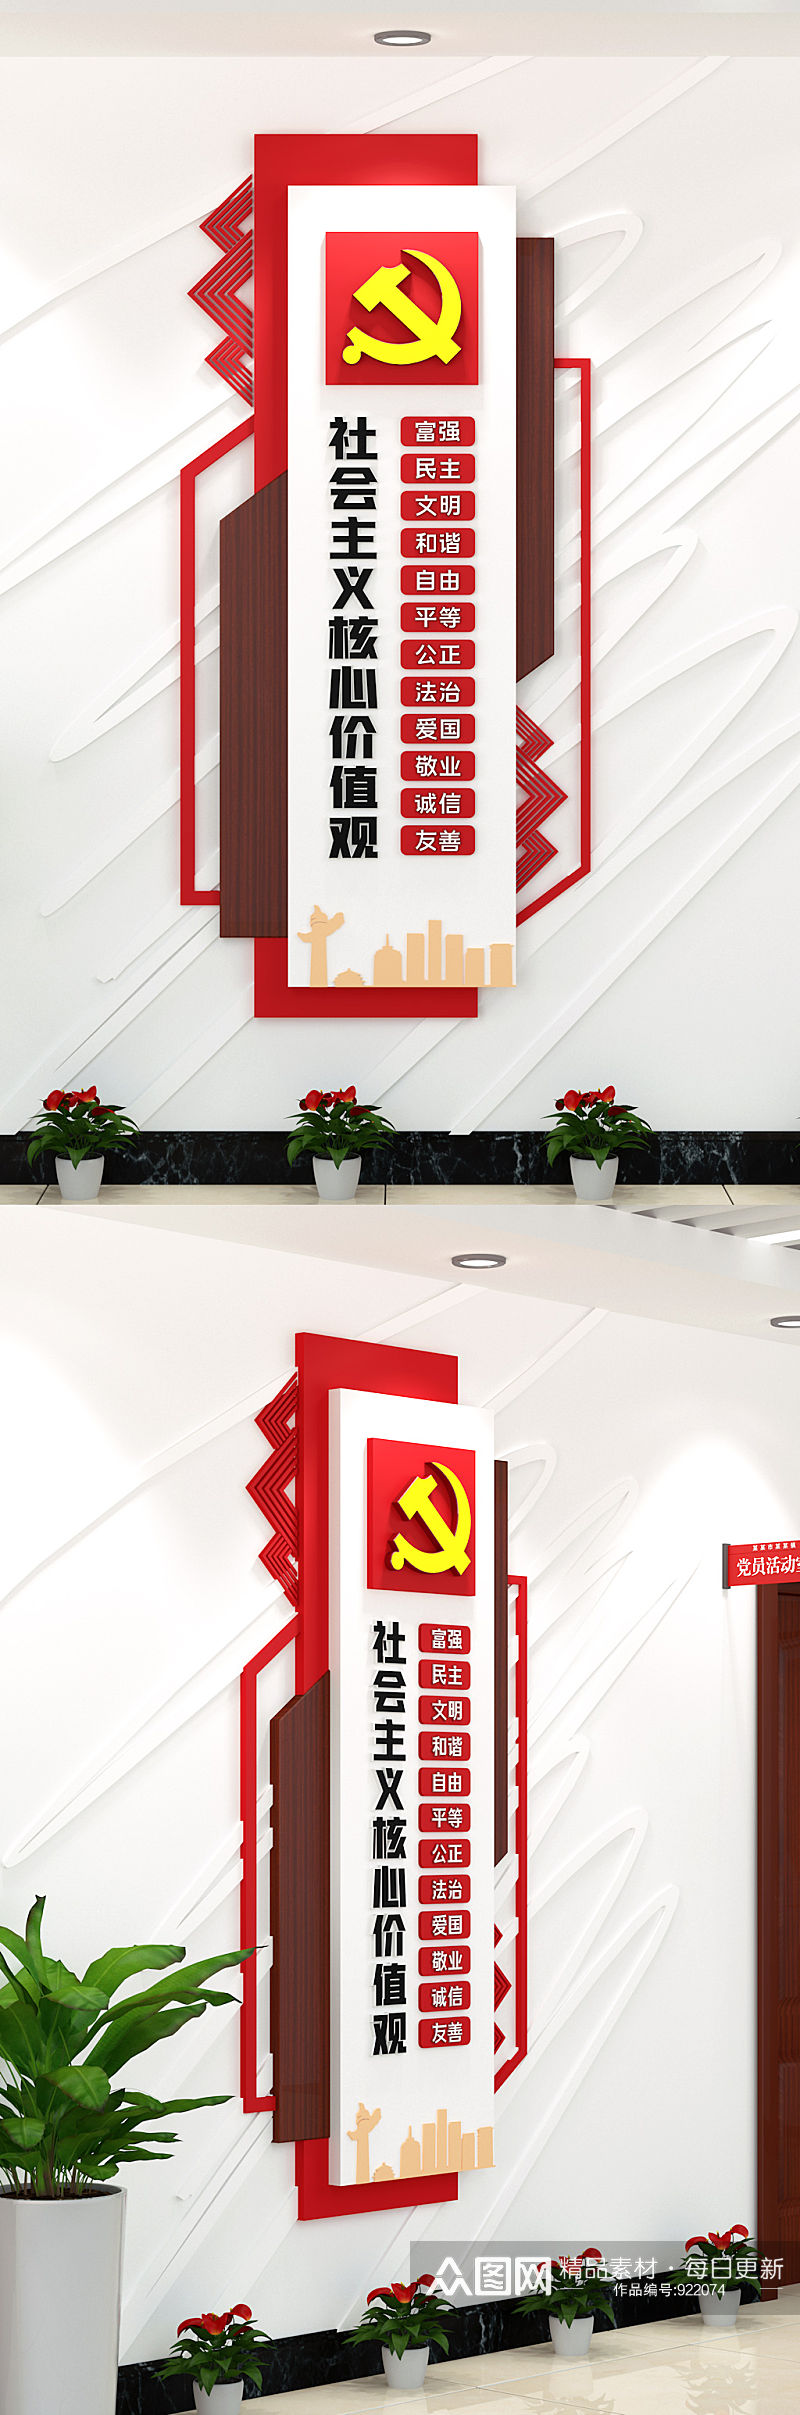 社会主义核心价值观上墙单位竖版党建文化墙素材